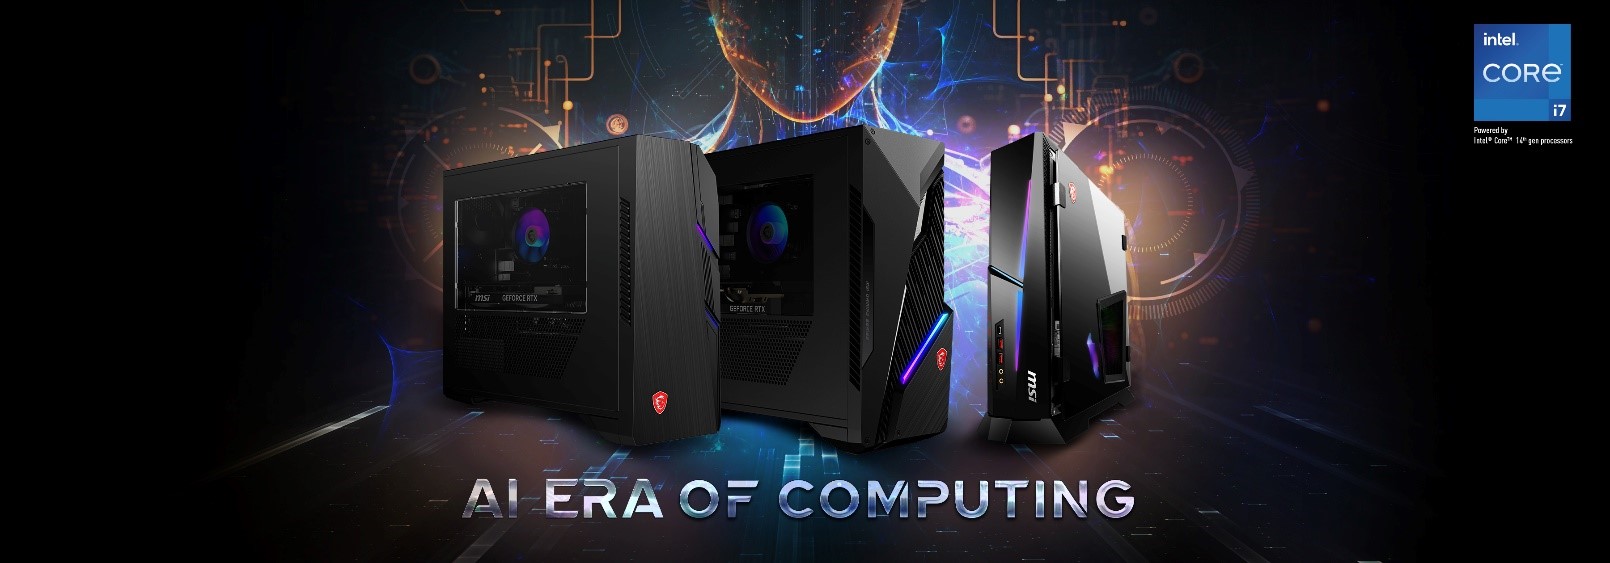 MSI 微星科技推出桌上型電腦、電腦配件新品亮相 CES 2024 ，多項產品獲得創新獎項肯定 - 電腦王阿達